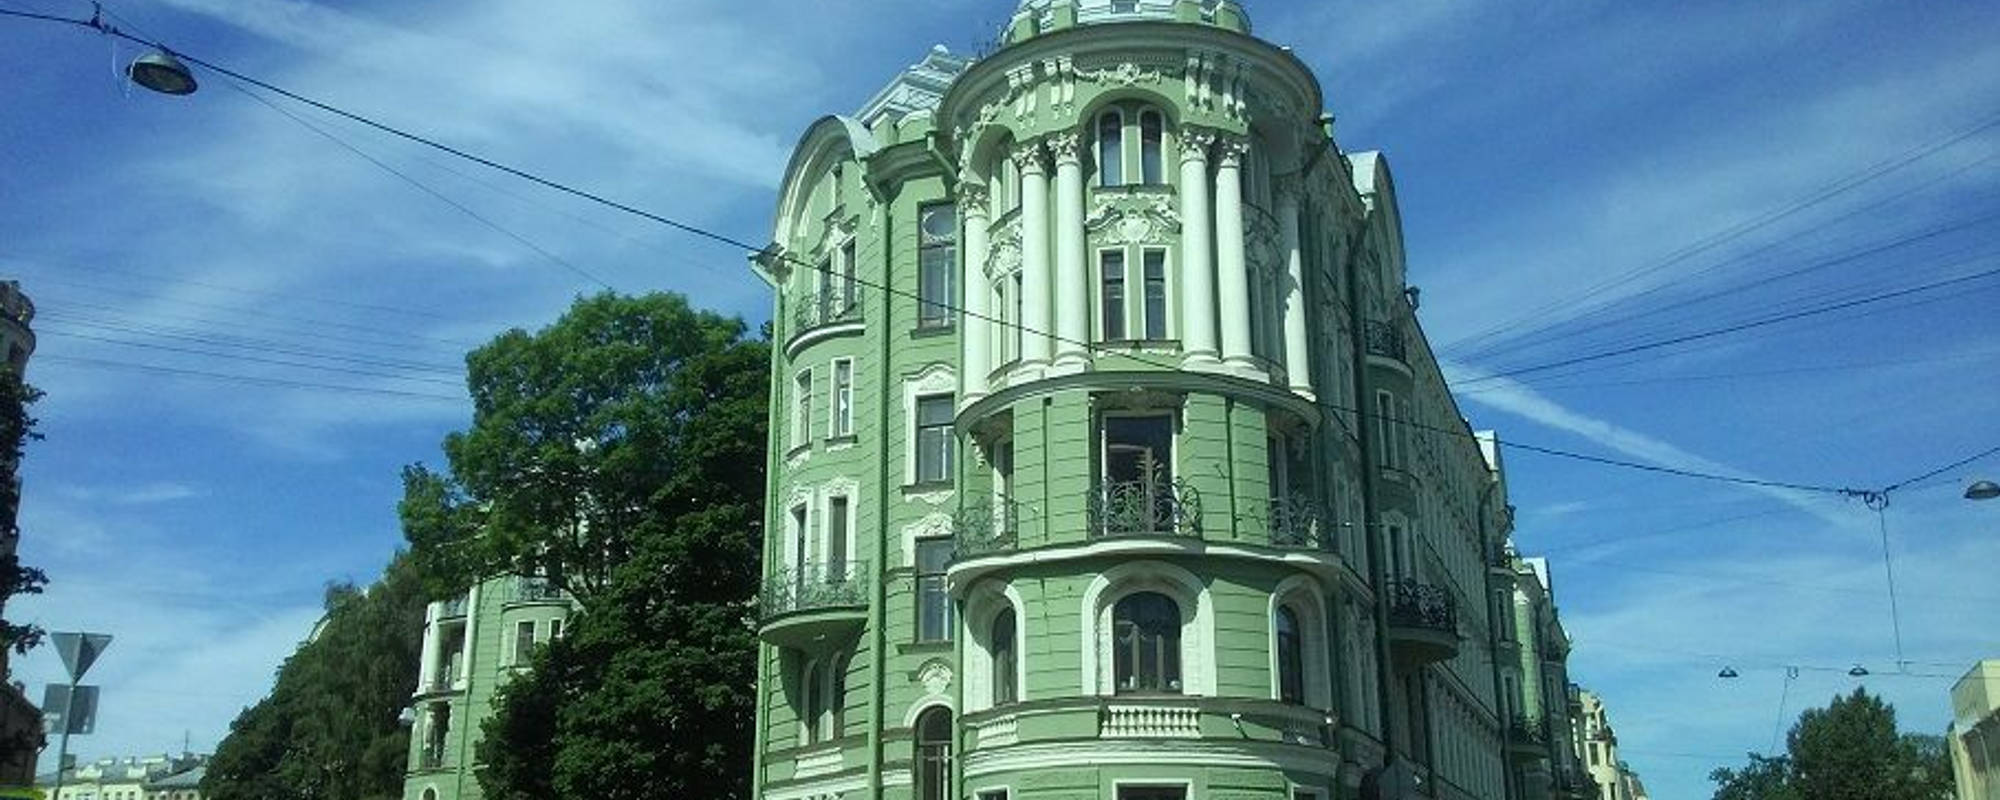 Kolobovsky House